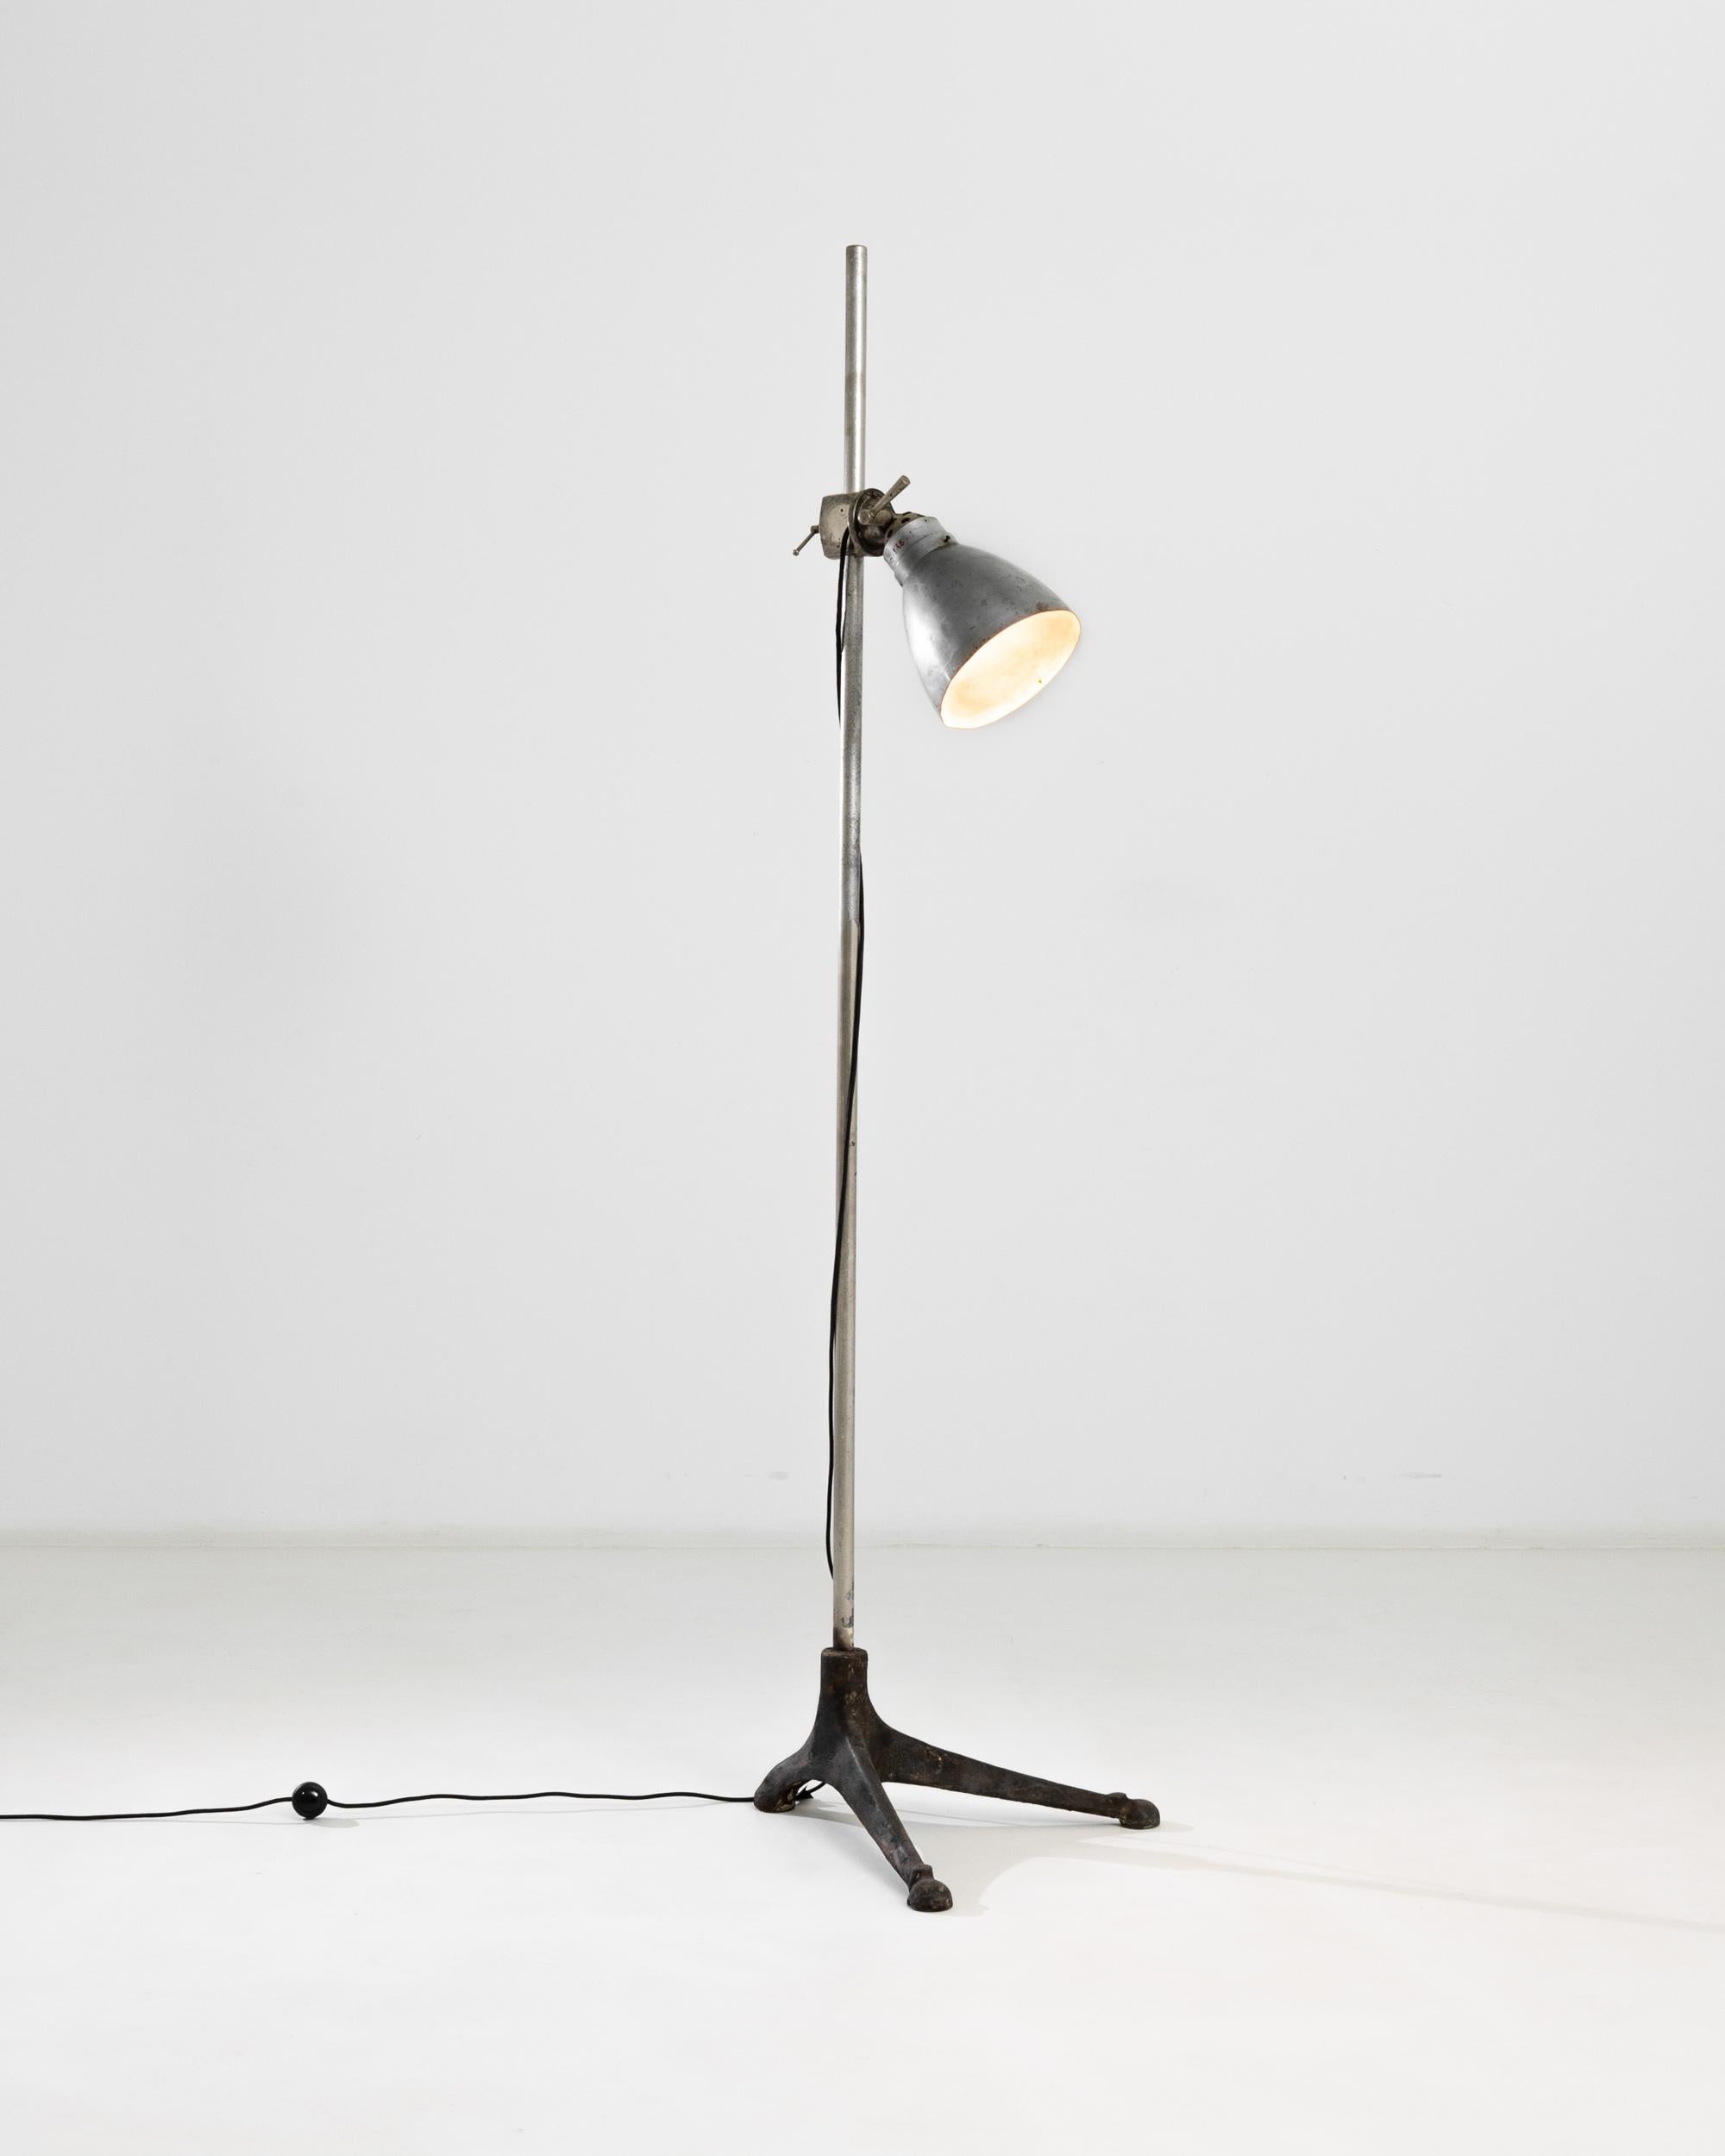 Diese in Frankreich hergestellte Stehlampe aus Metall aus dem 20. Jahrhundert verfügt über einen verstellbaren Schirm und unregelmäßige schmiedeeiserne Dreibeinfüße, die der Lampe ein eigentümliches Profil verleihen. Die hohe Stange ragt über